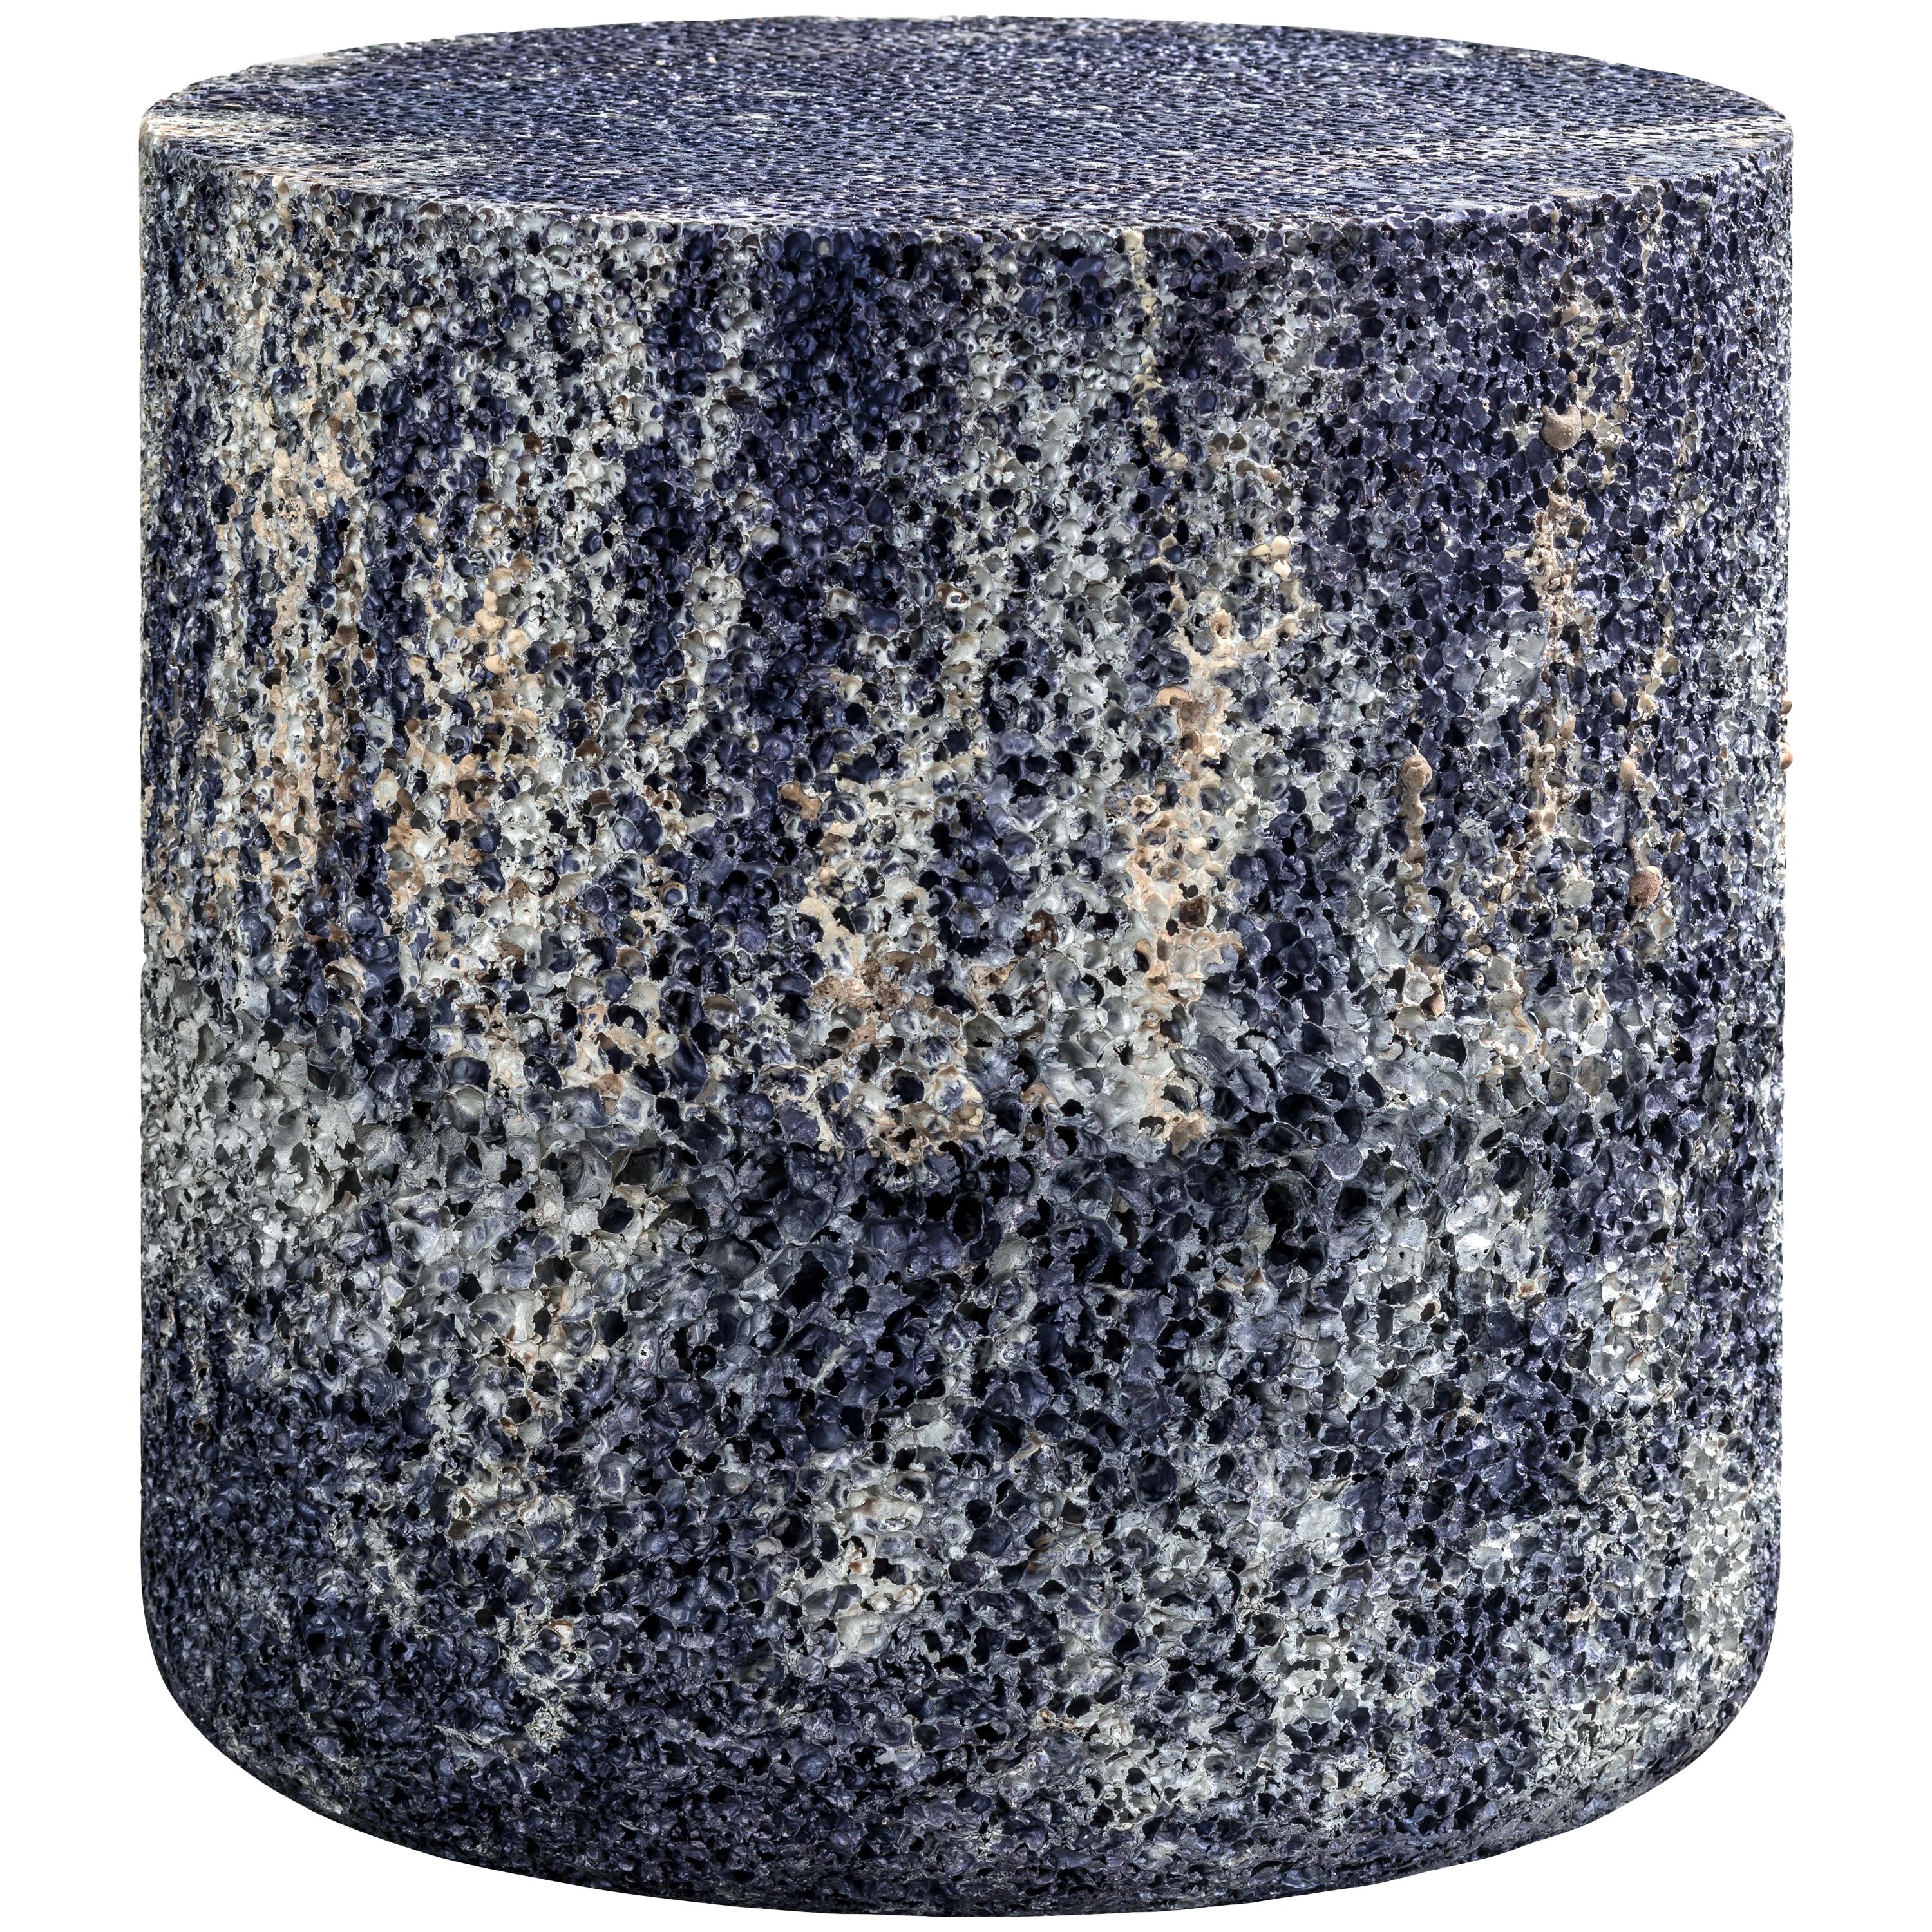 Table d'appoint ou tabouret rond en métal bleu rocheux en mousse d'aluminium de Michael Young